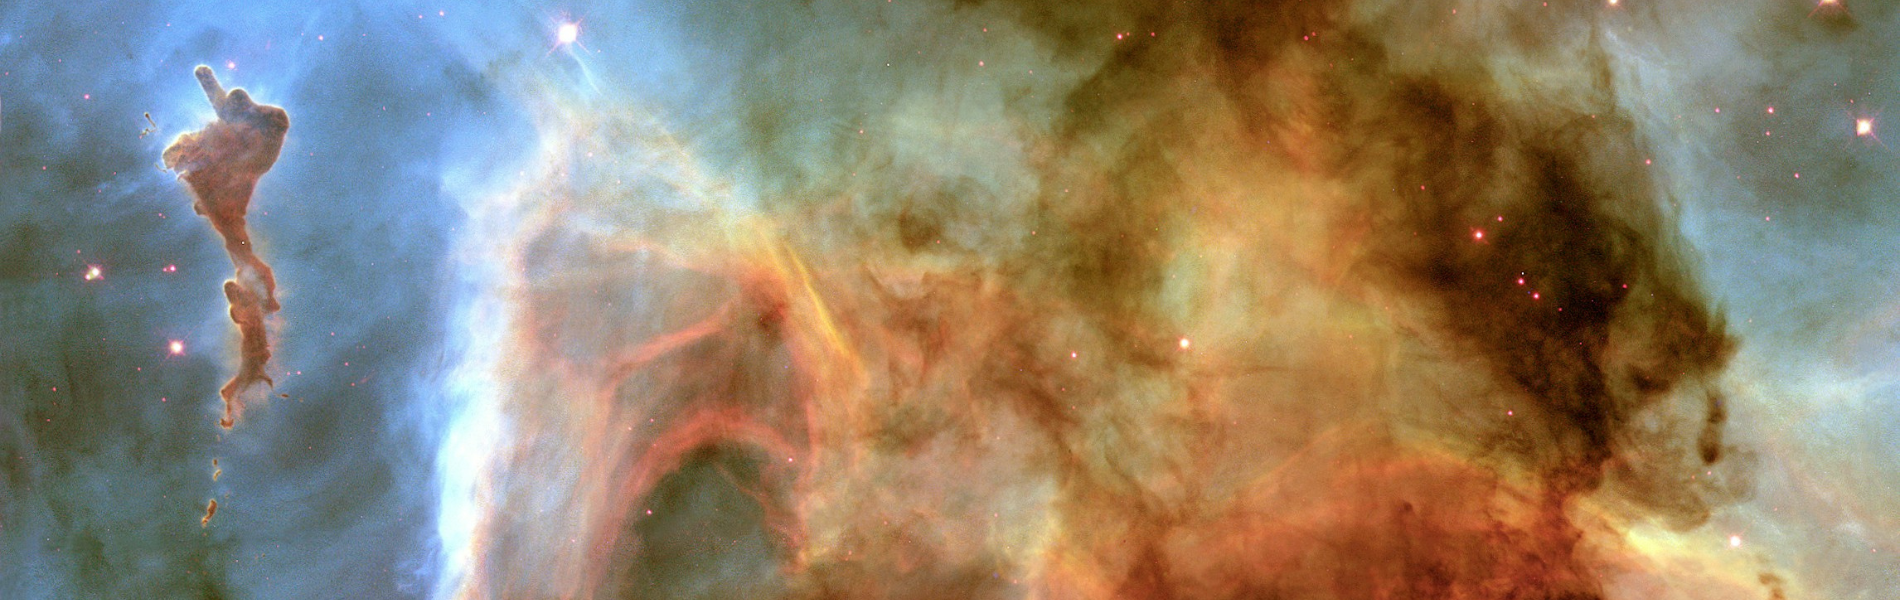 Imagem da NASA mostrando diversos pontos luminosos e formações de nebulosa